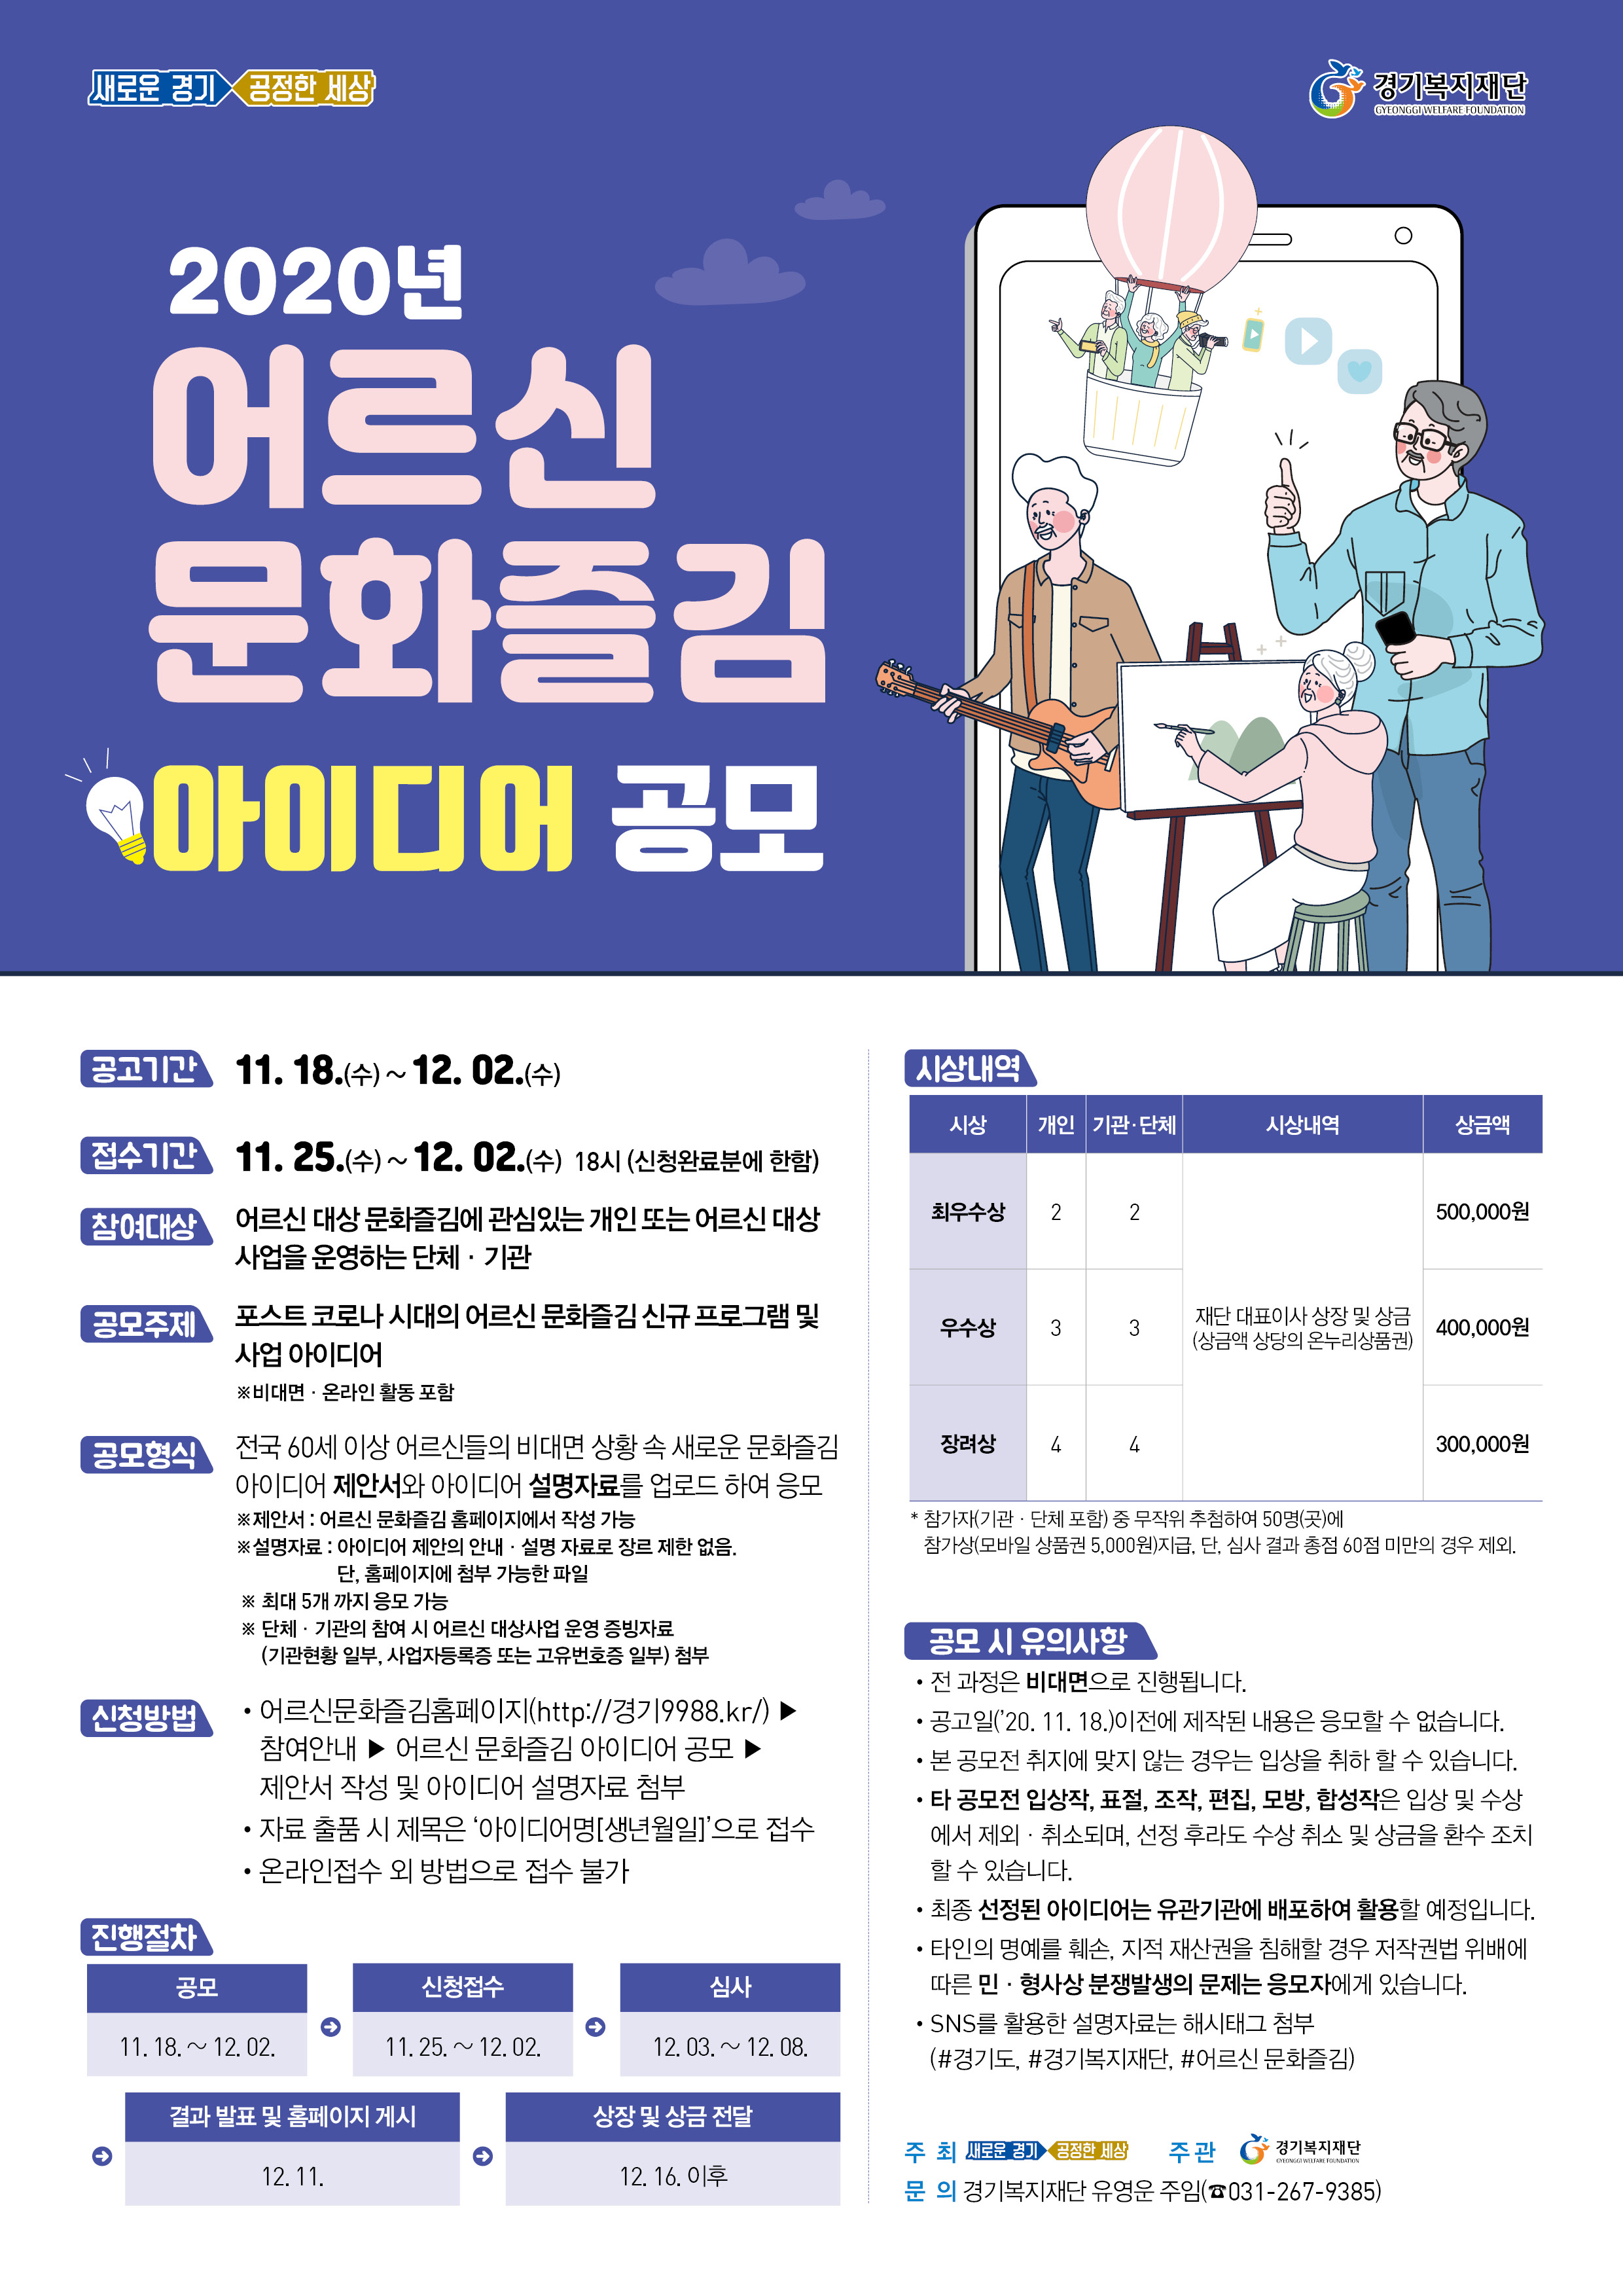 7차수정_ 어르신 문화즐김(포스터)20201117.jpg